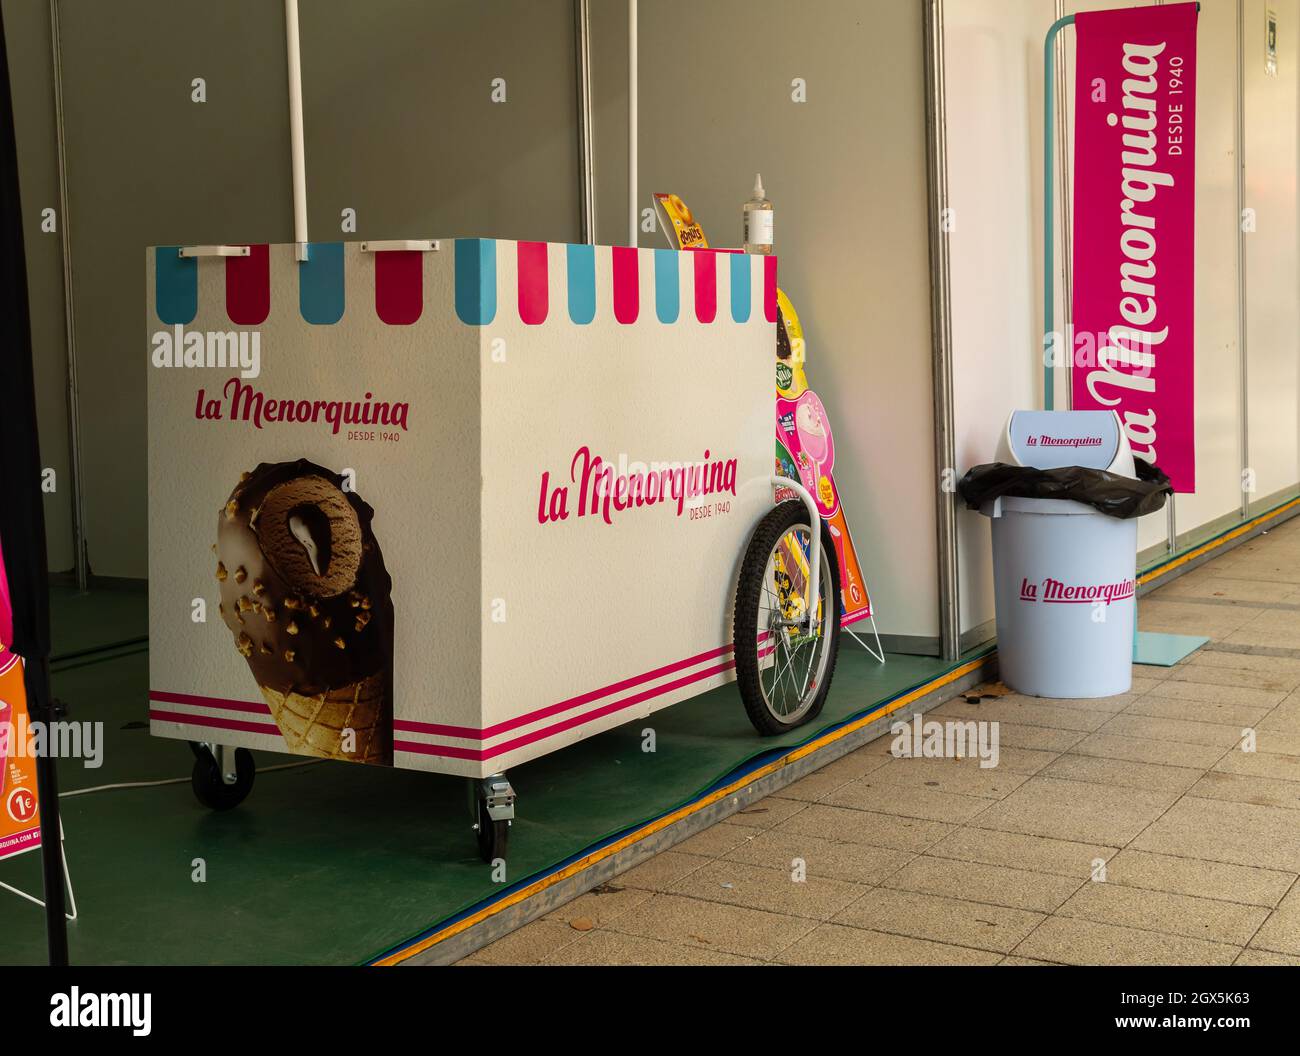 Llucmajor, Espagne; octobre 03 2021: Chariot de glace d'époque de la compagnie la Menorquina, très populaire dans les îles Baléares. Deuxième édition du Frik Banque D'Images